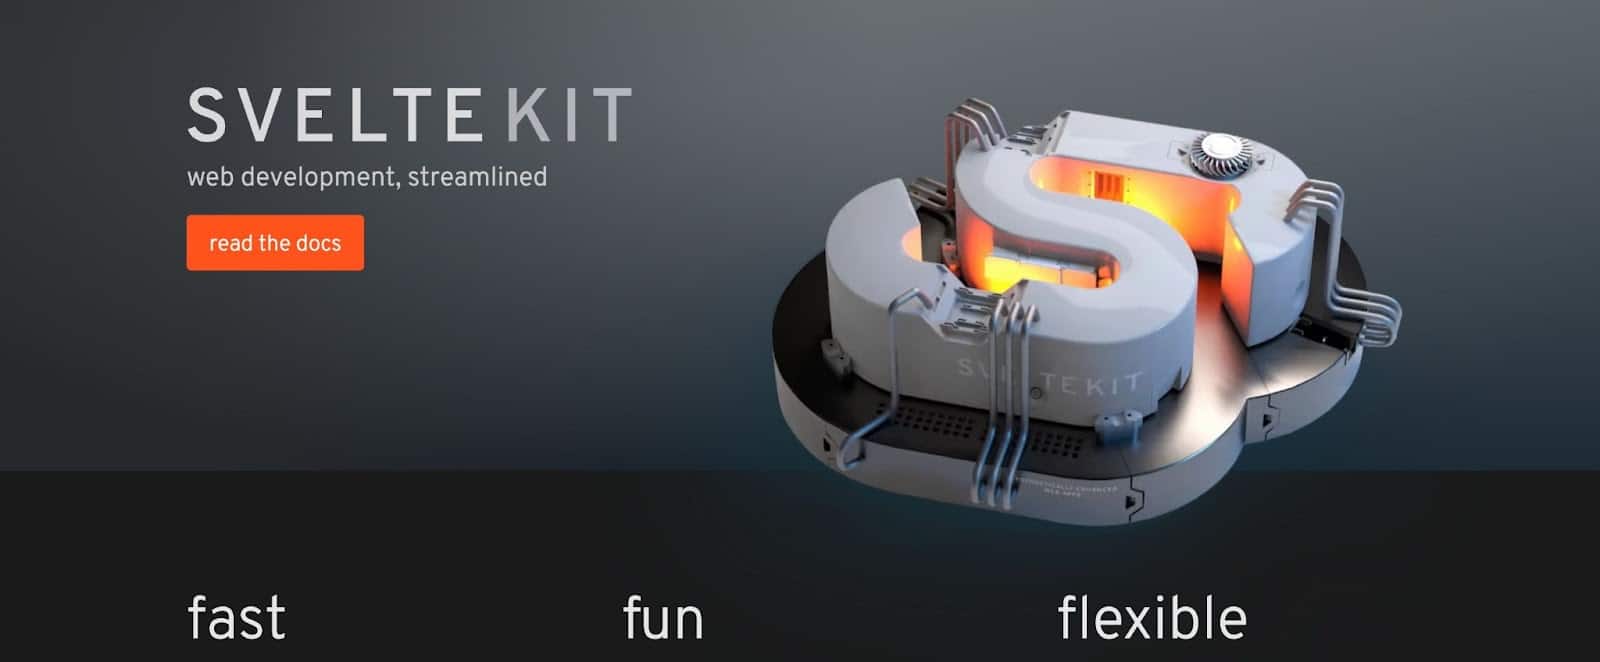 The SvelteKit homepage.